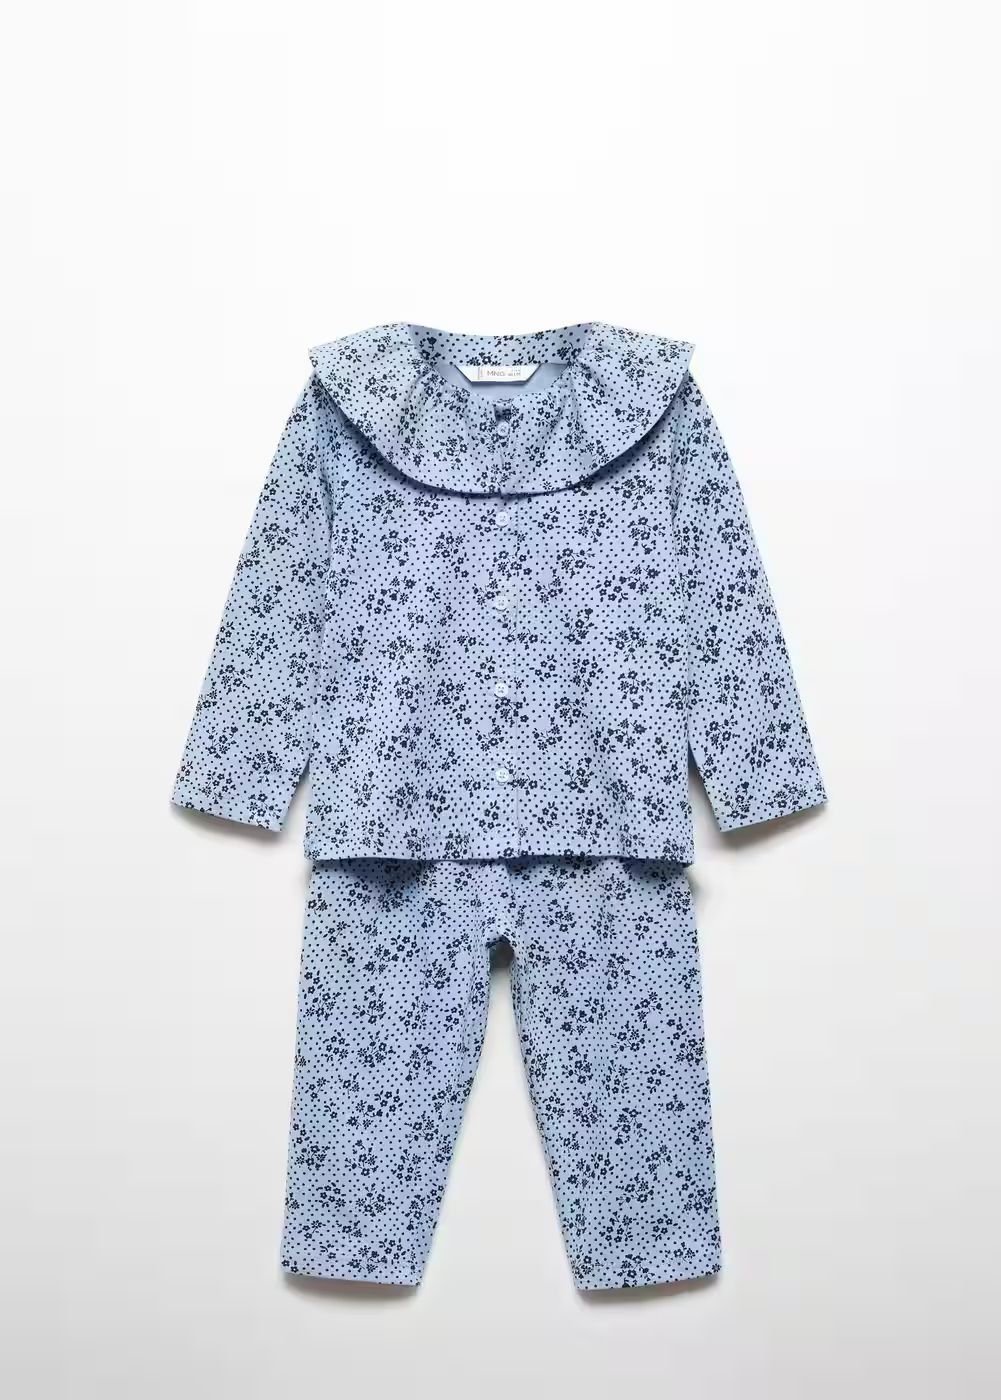 Printed cotton pyjamas | MANGO (US)